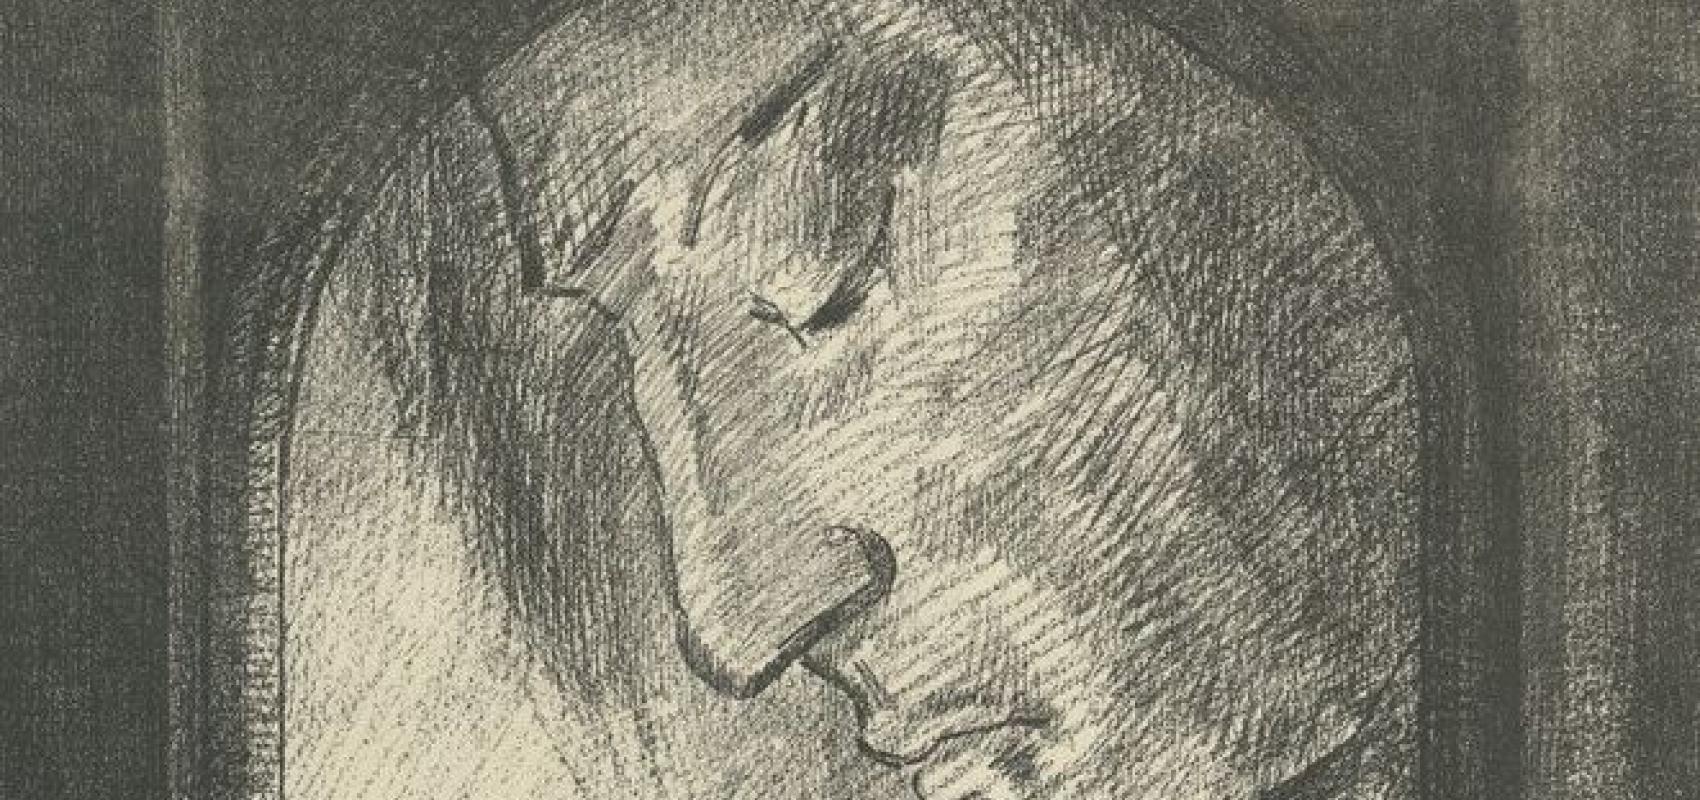 Lumière, estampe d’Odilon Redon, 1893 BnF, Estampes et photographie -  - BnF